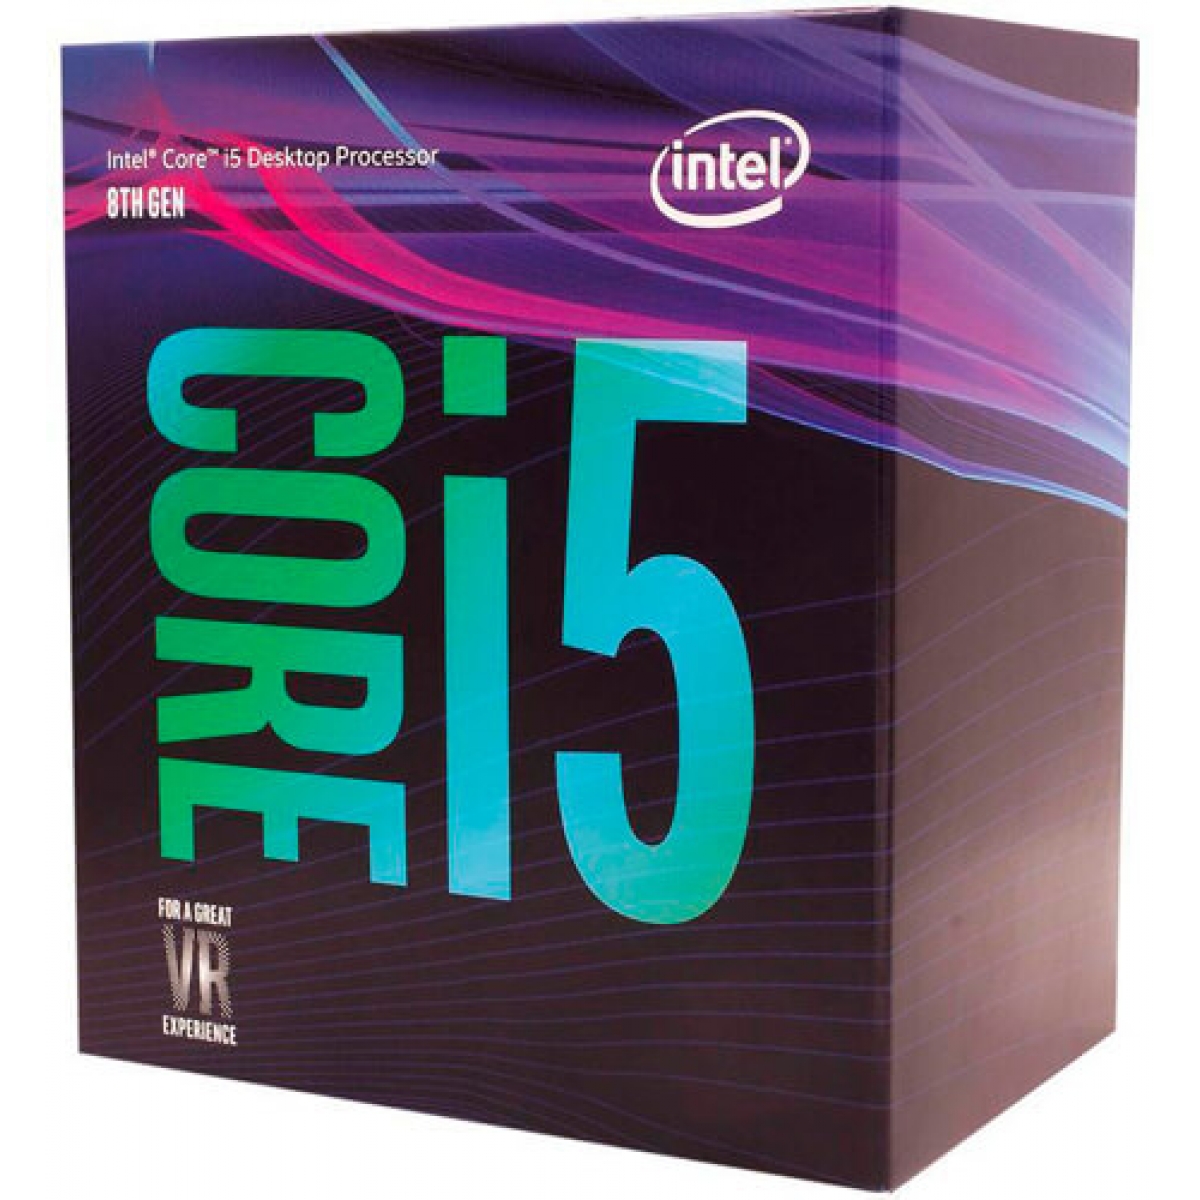 Processador Intel Core i5 8500 3GHz (4.1GHz Turbo), 8ª Geração, 6-Core 6-Thread, LGA 1151, BX80684I58500